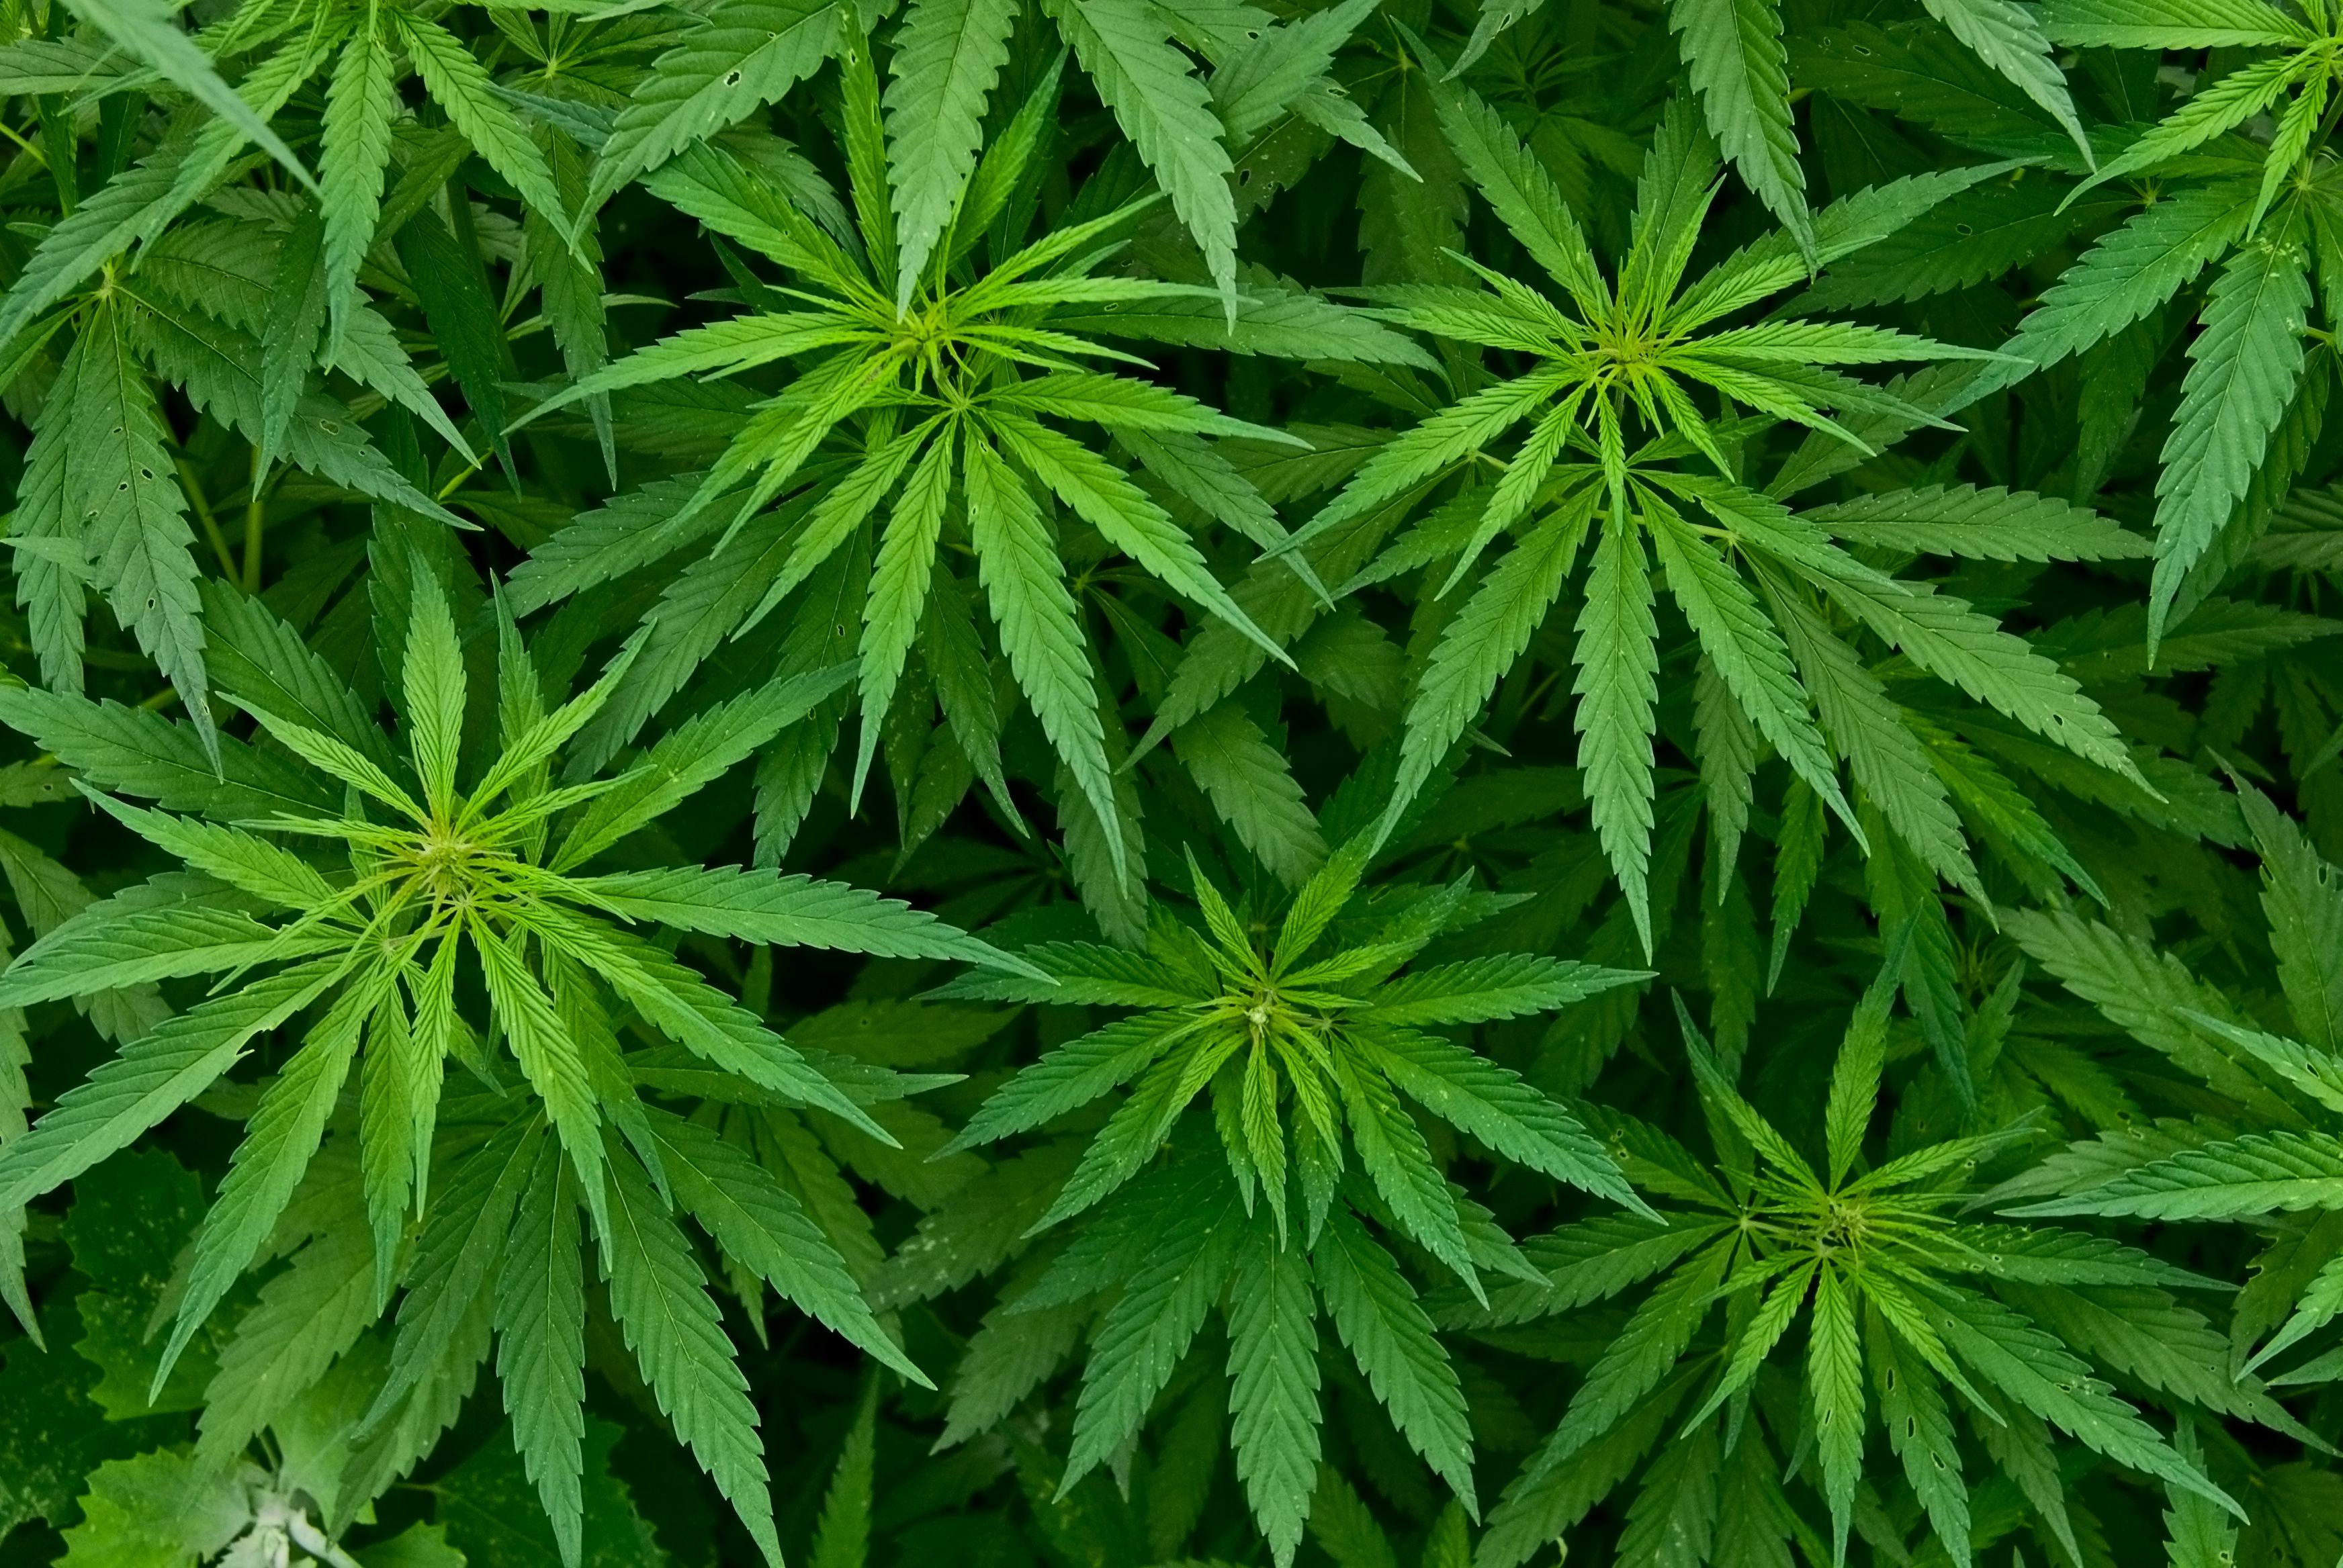 Marijuana | Image Credit: © Opra - stock.adobe.com